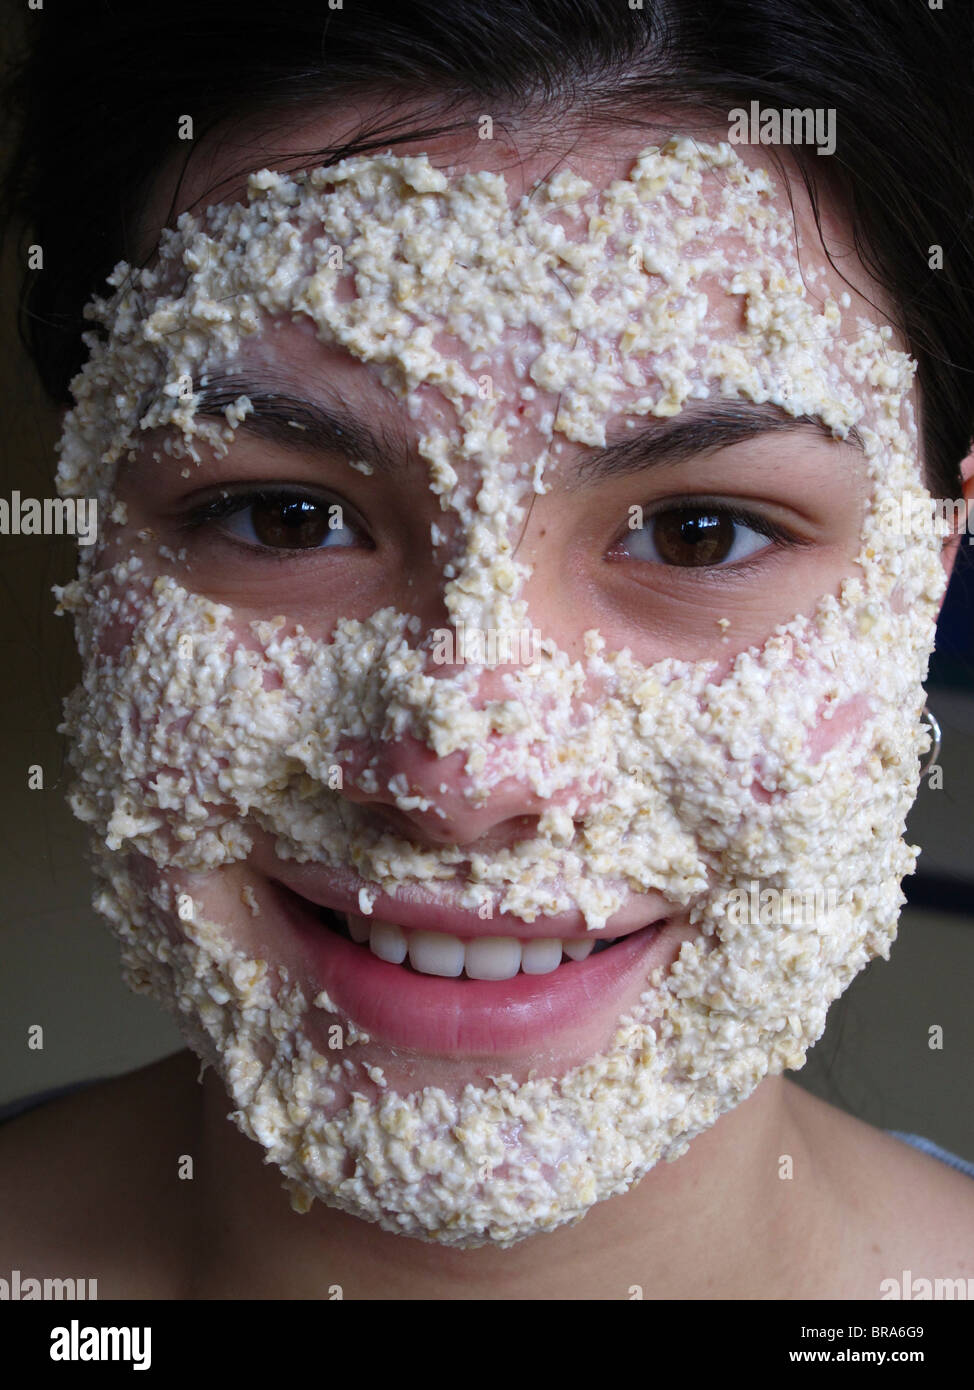 Ragazza adolescente utilizzando una maschera di avena per ripulire la sua pelle Foto Stock